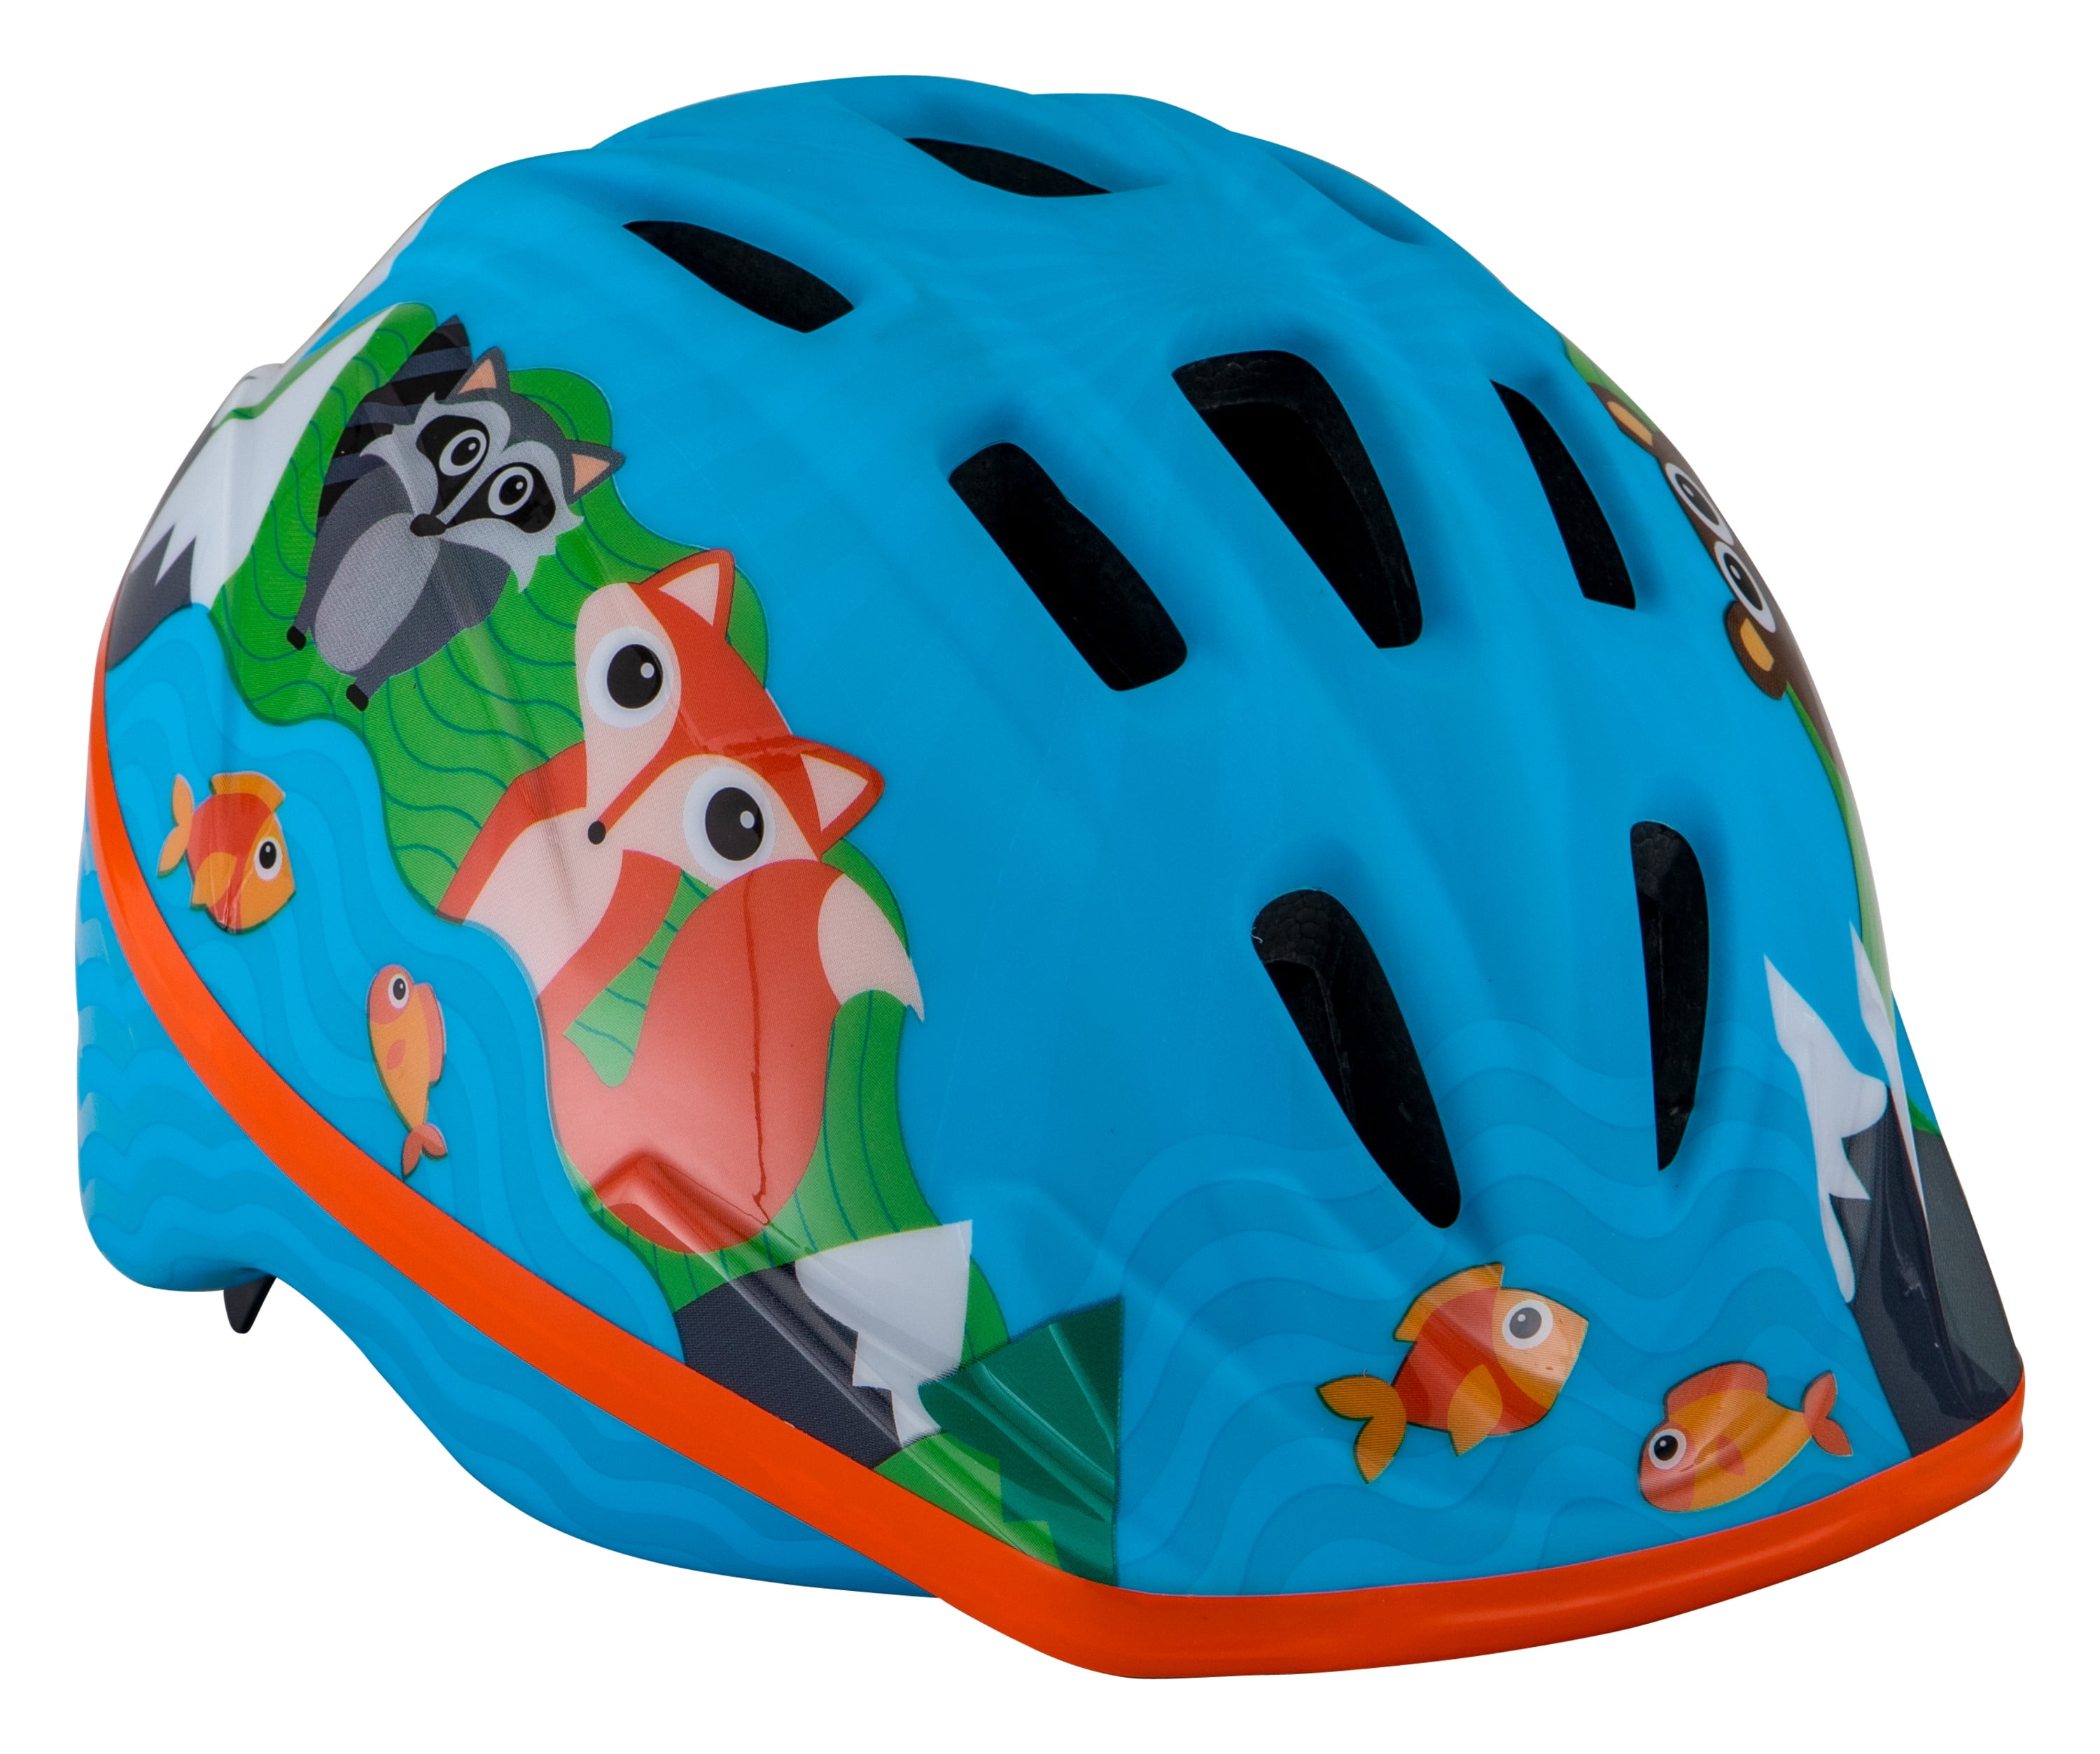 Dial Fit Schwinn Kids Character Bike Helmet Toddler 3-5 Years Old 48-52 cm 